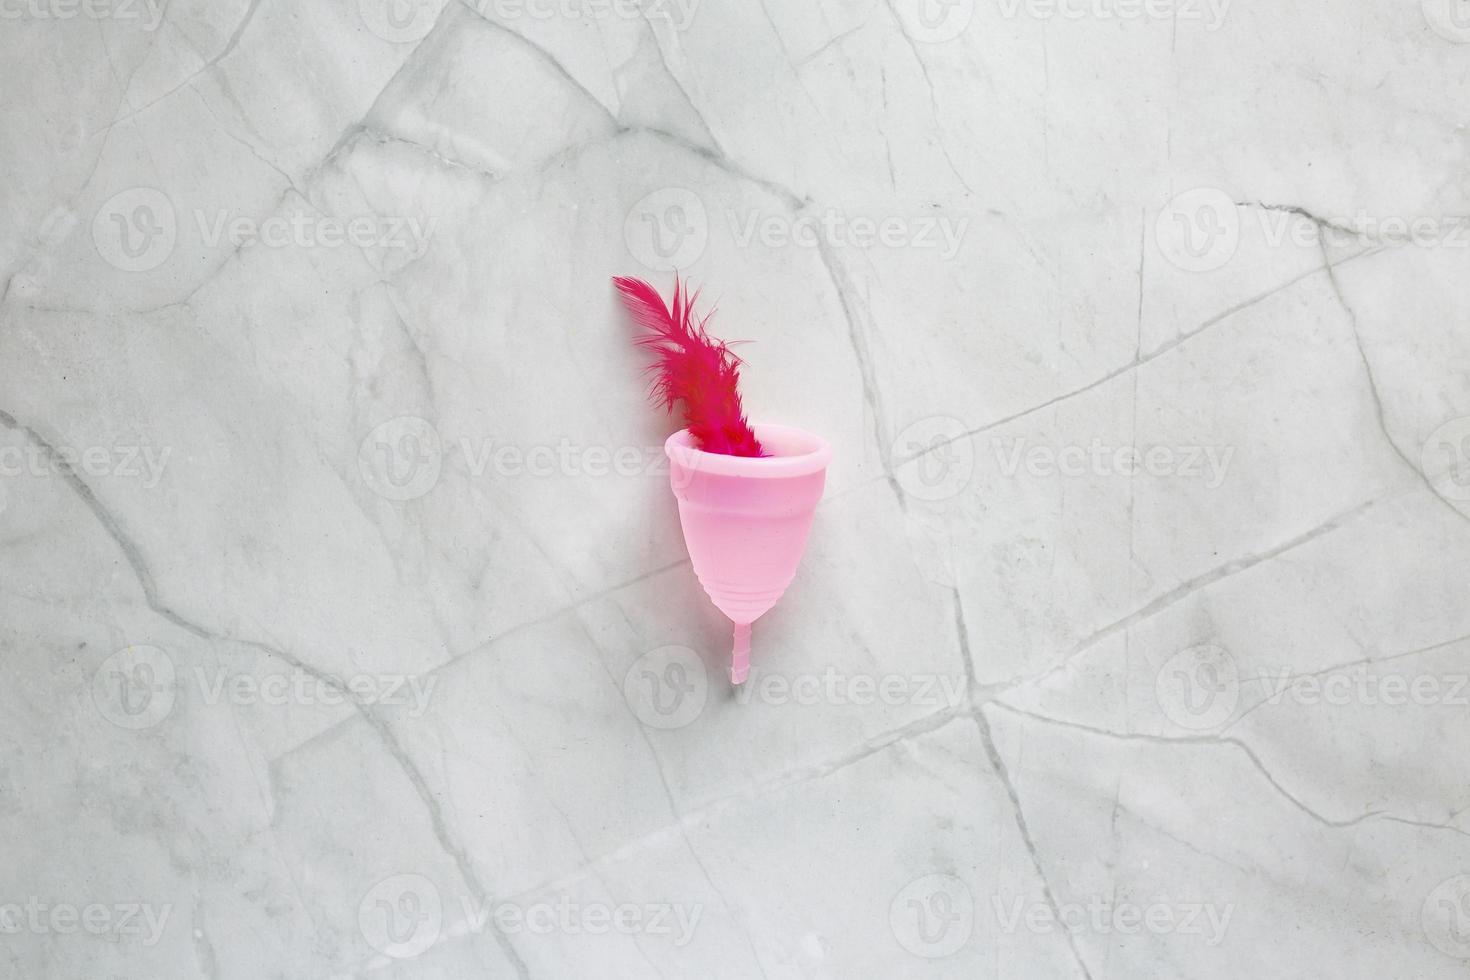 menstruel tasse et rouge oiseau plume sur marbre Contexte. alternative féminin hygiène produit pendant le période. femmes santé concept photo